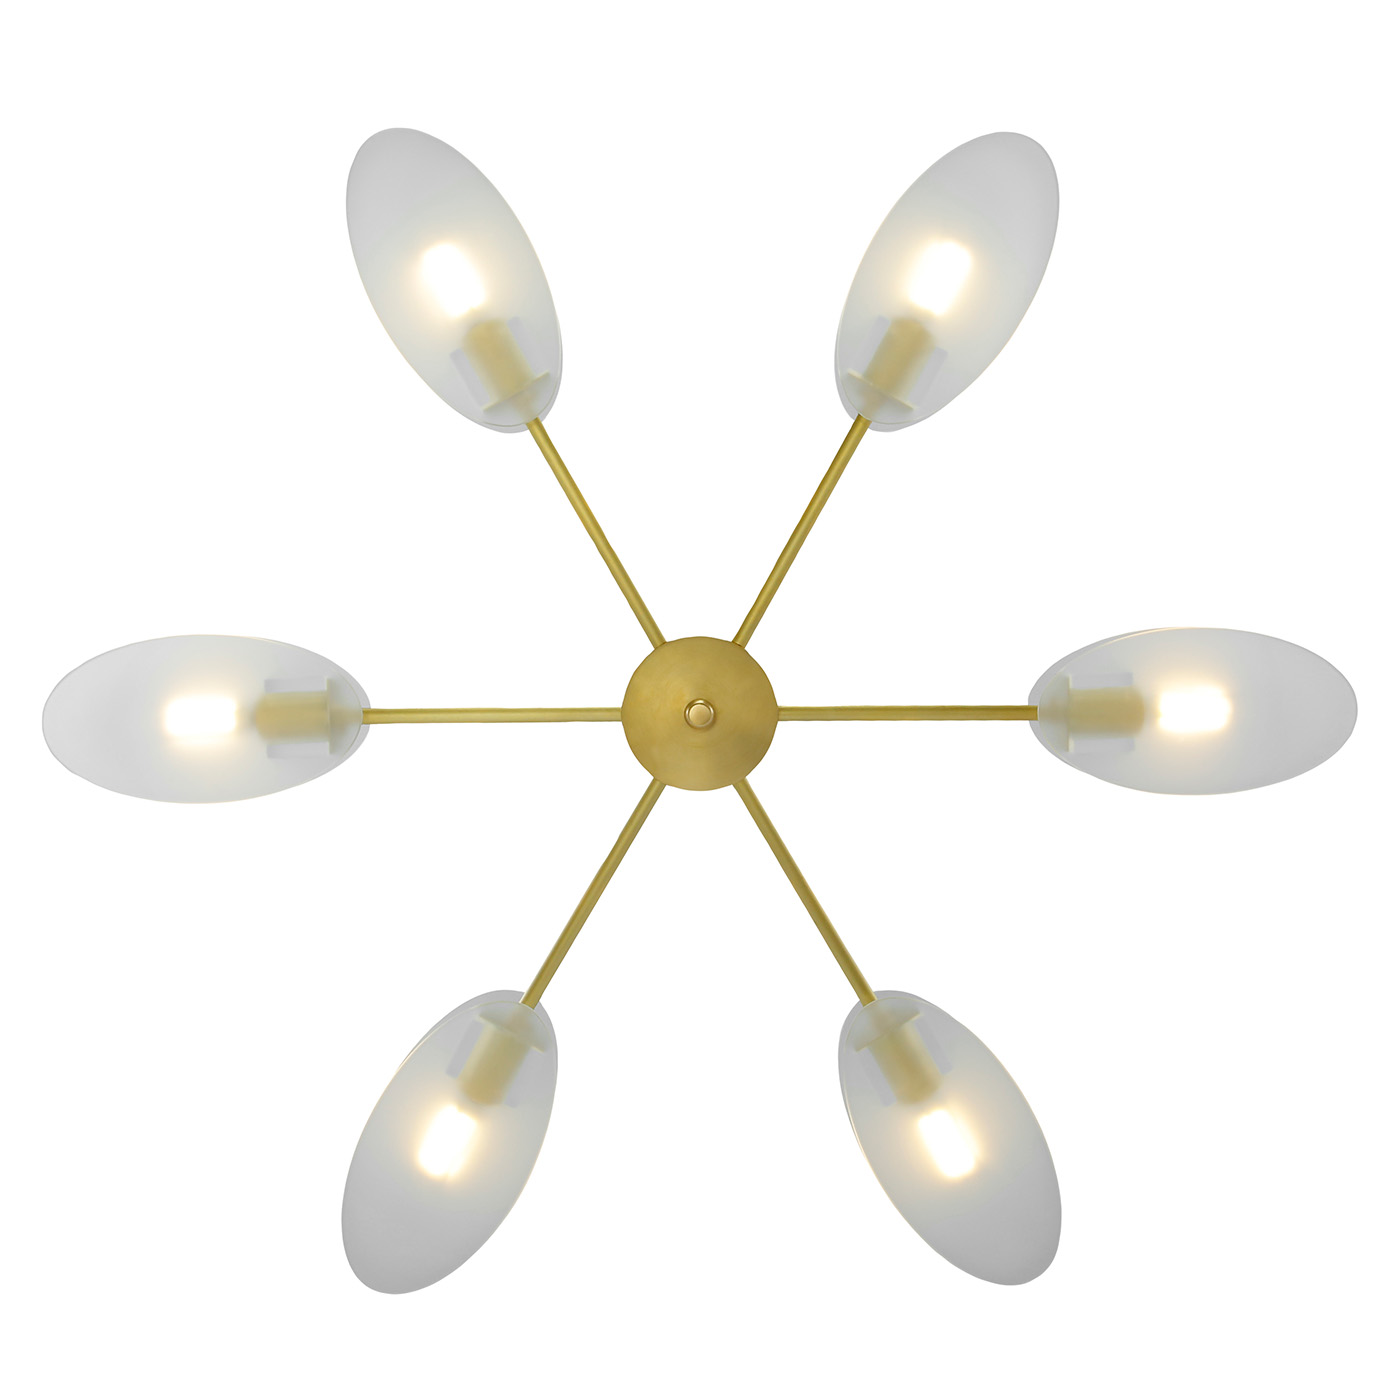 6-armiger Stern-Leuchter im Mid Century Design PRESENCE, Ø 74 cm, Bild 4